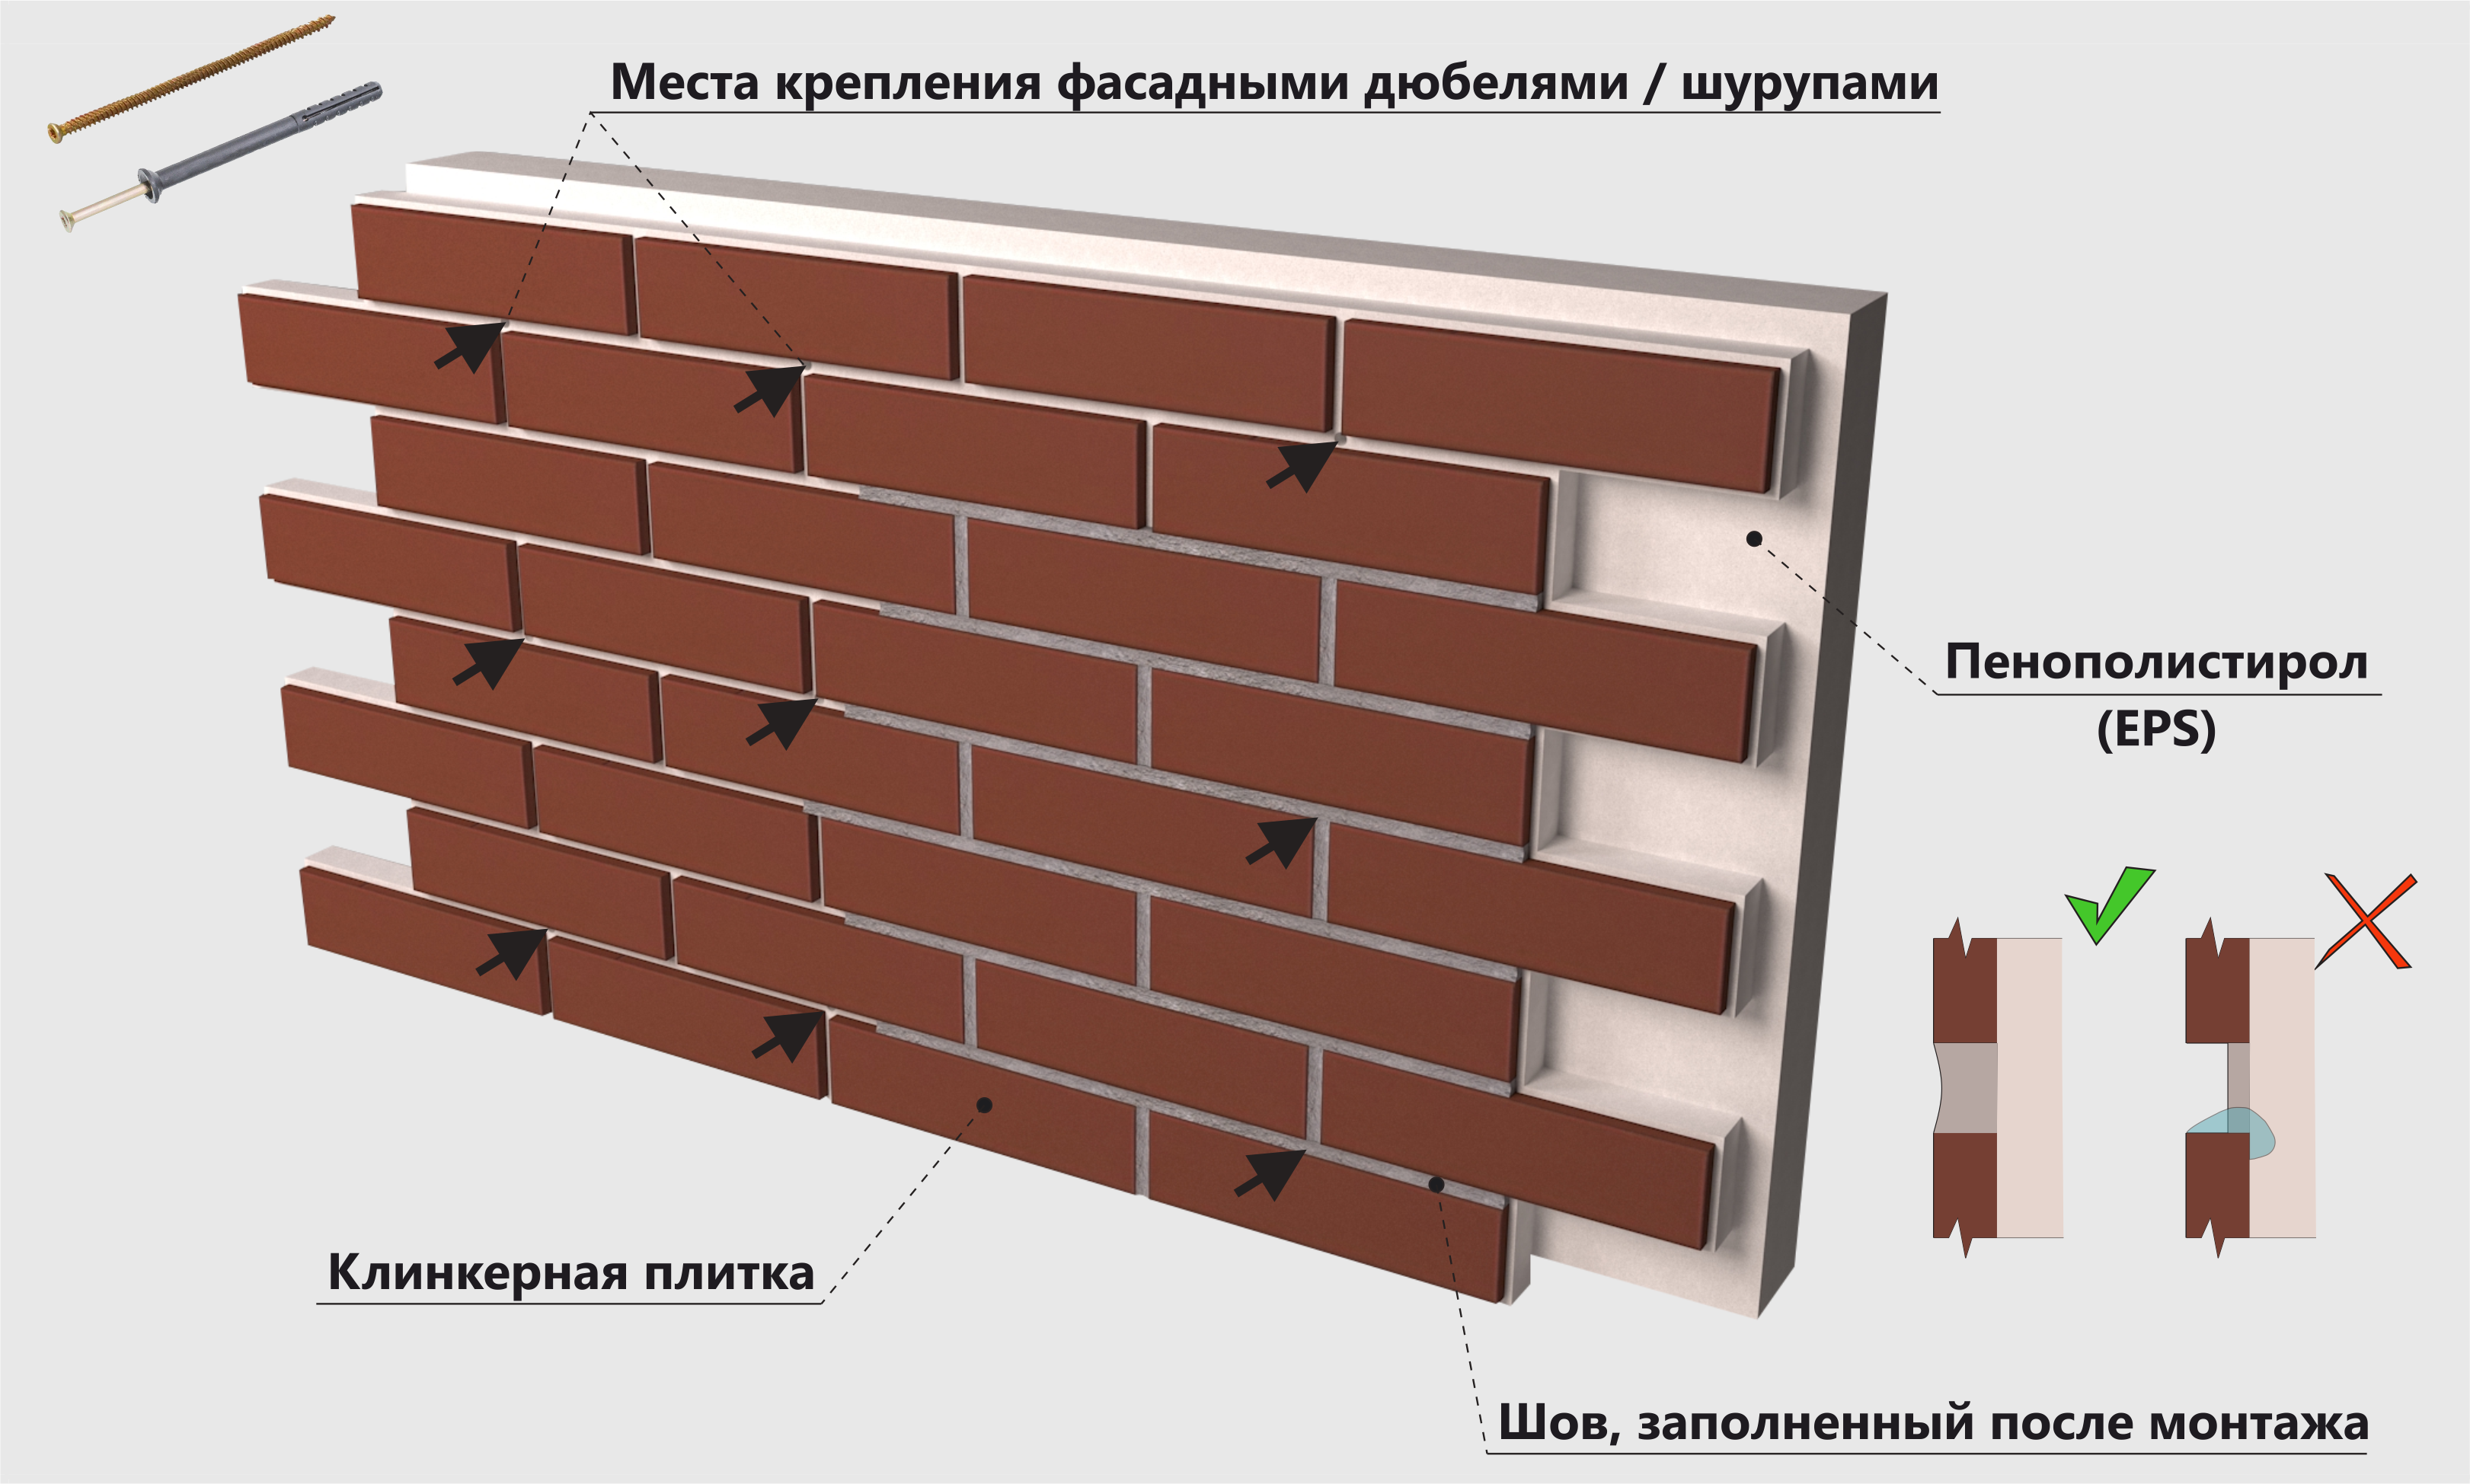 Чем примечательны фасадные термопанели с клинкерной плиткой + подробная инструкция по монтажу